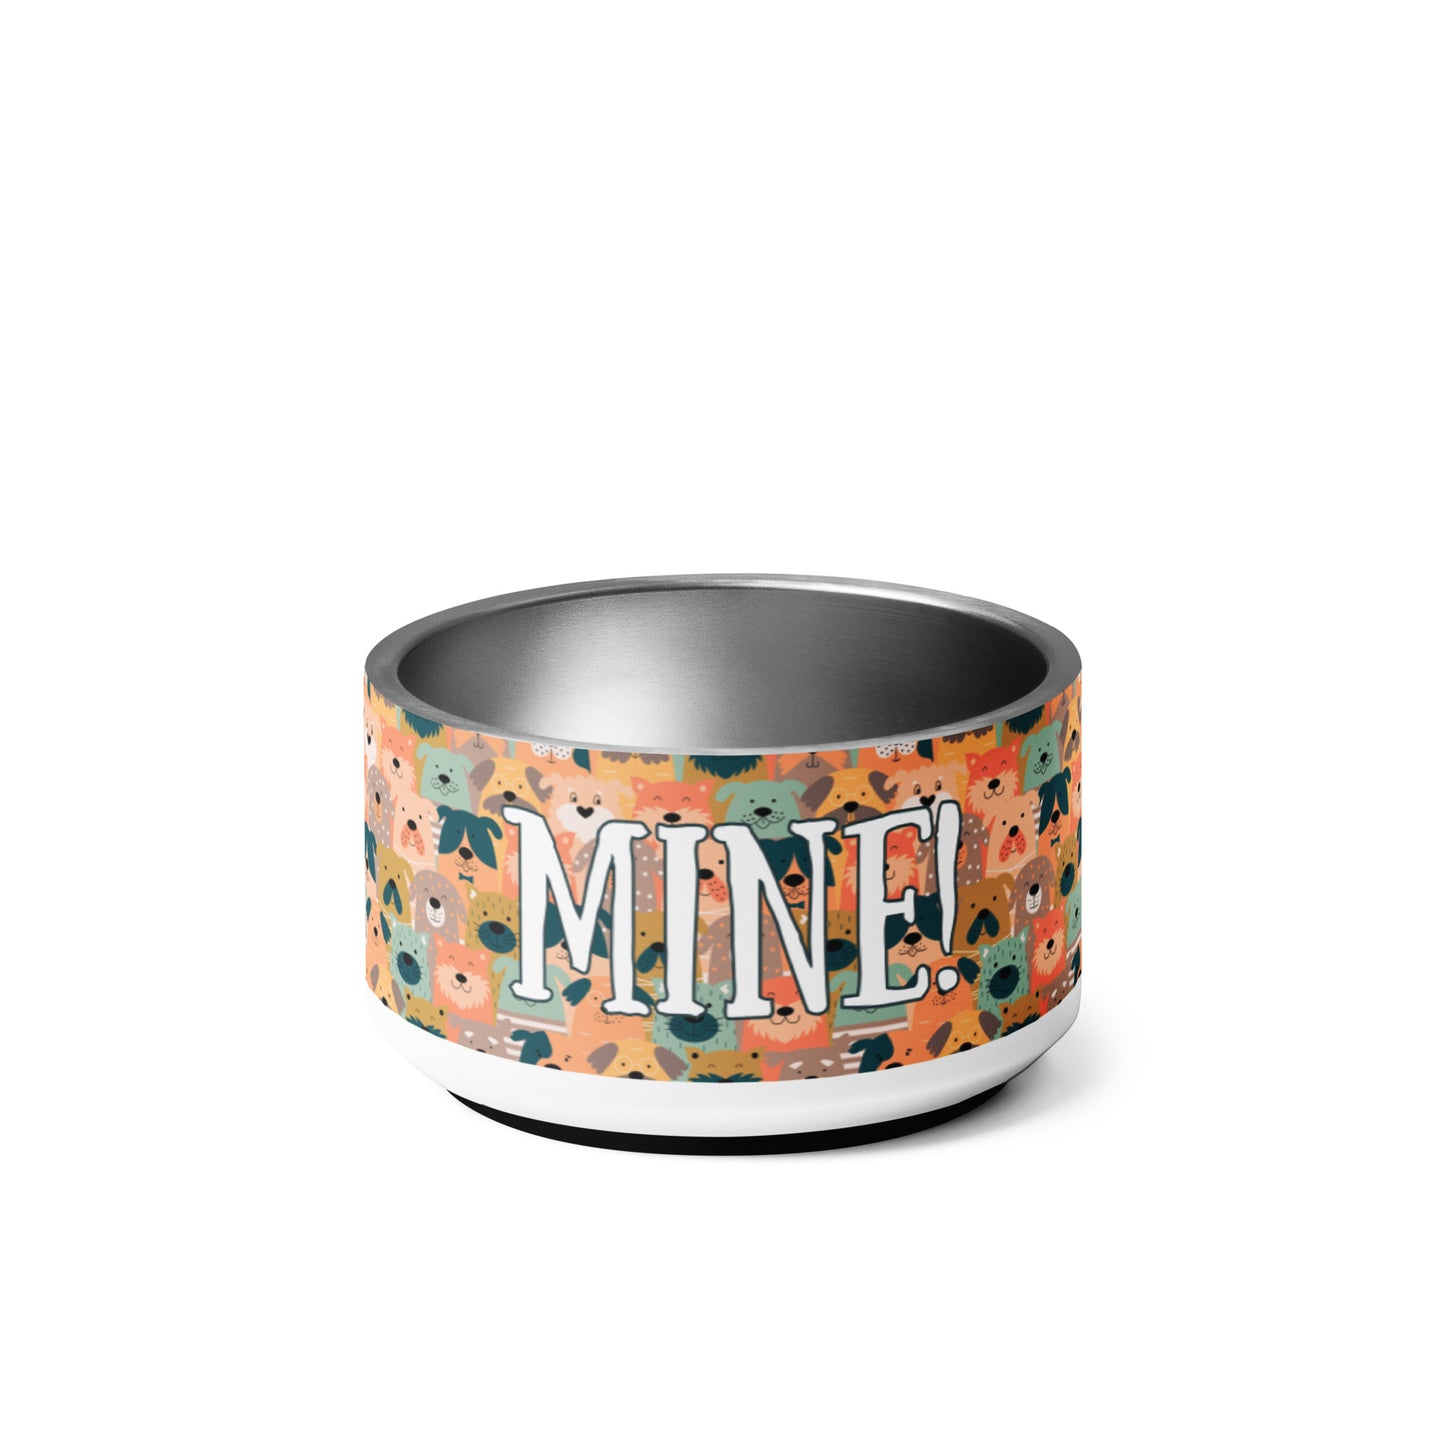 "Mine" small pet bowl